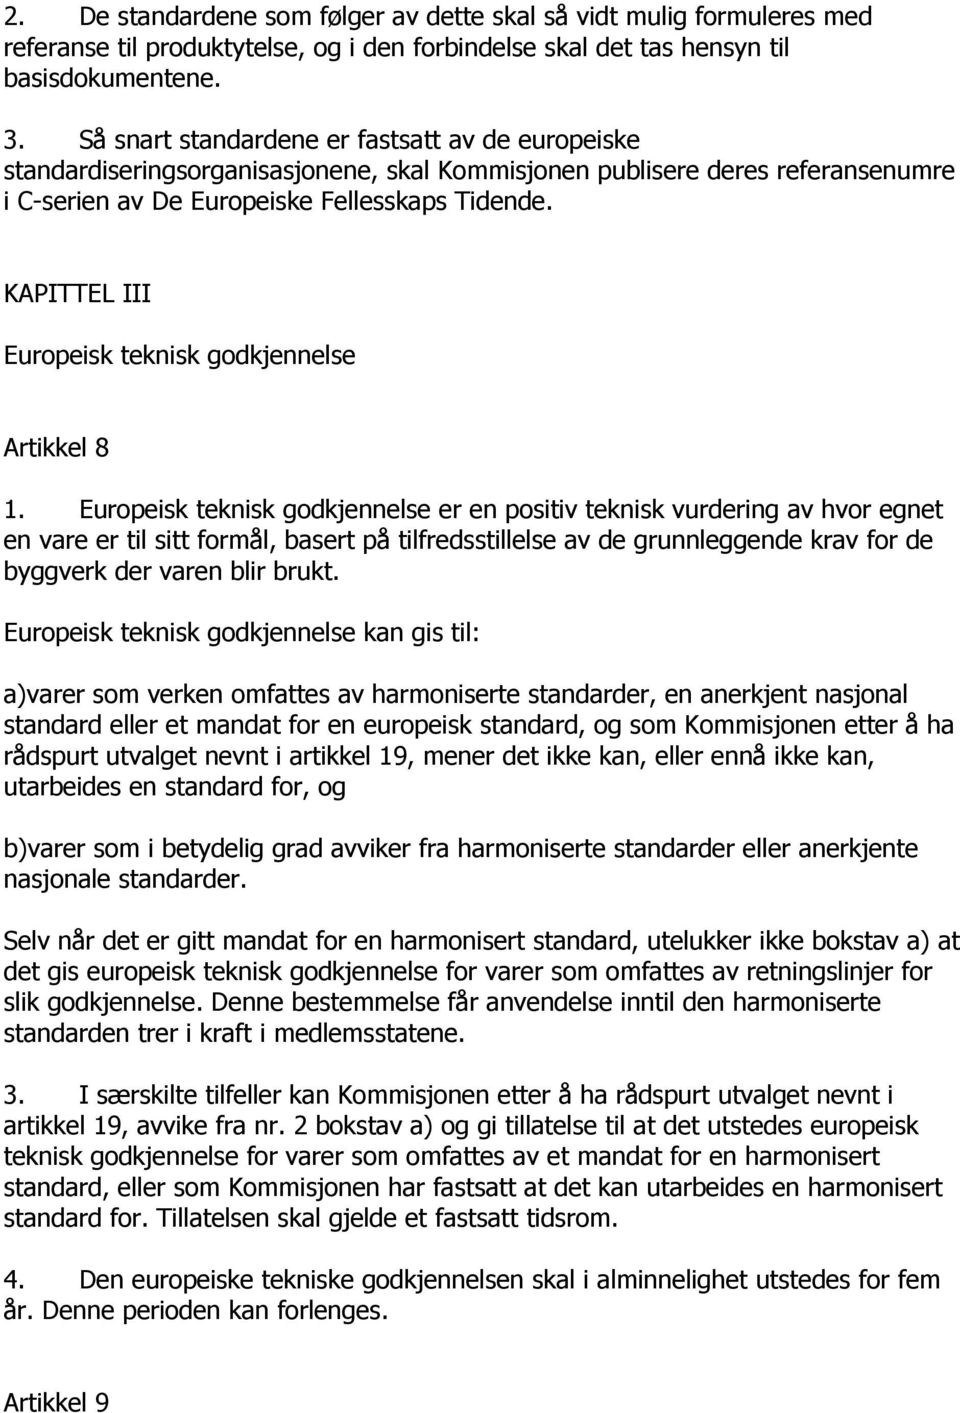 KAPITTEL III Europeisk teknisk godkjennelse Artikkel 8 1.